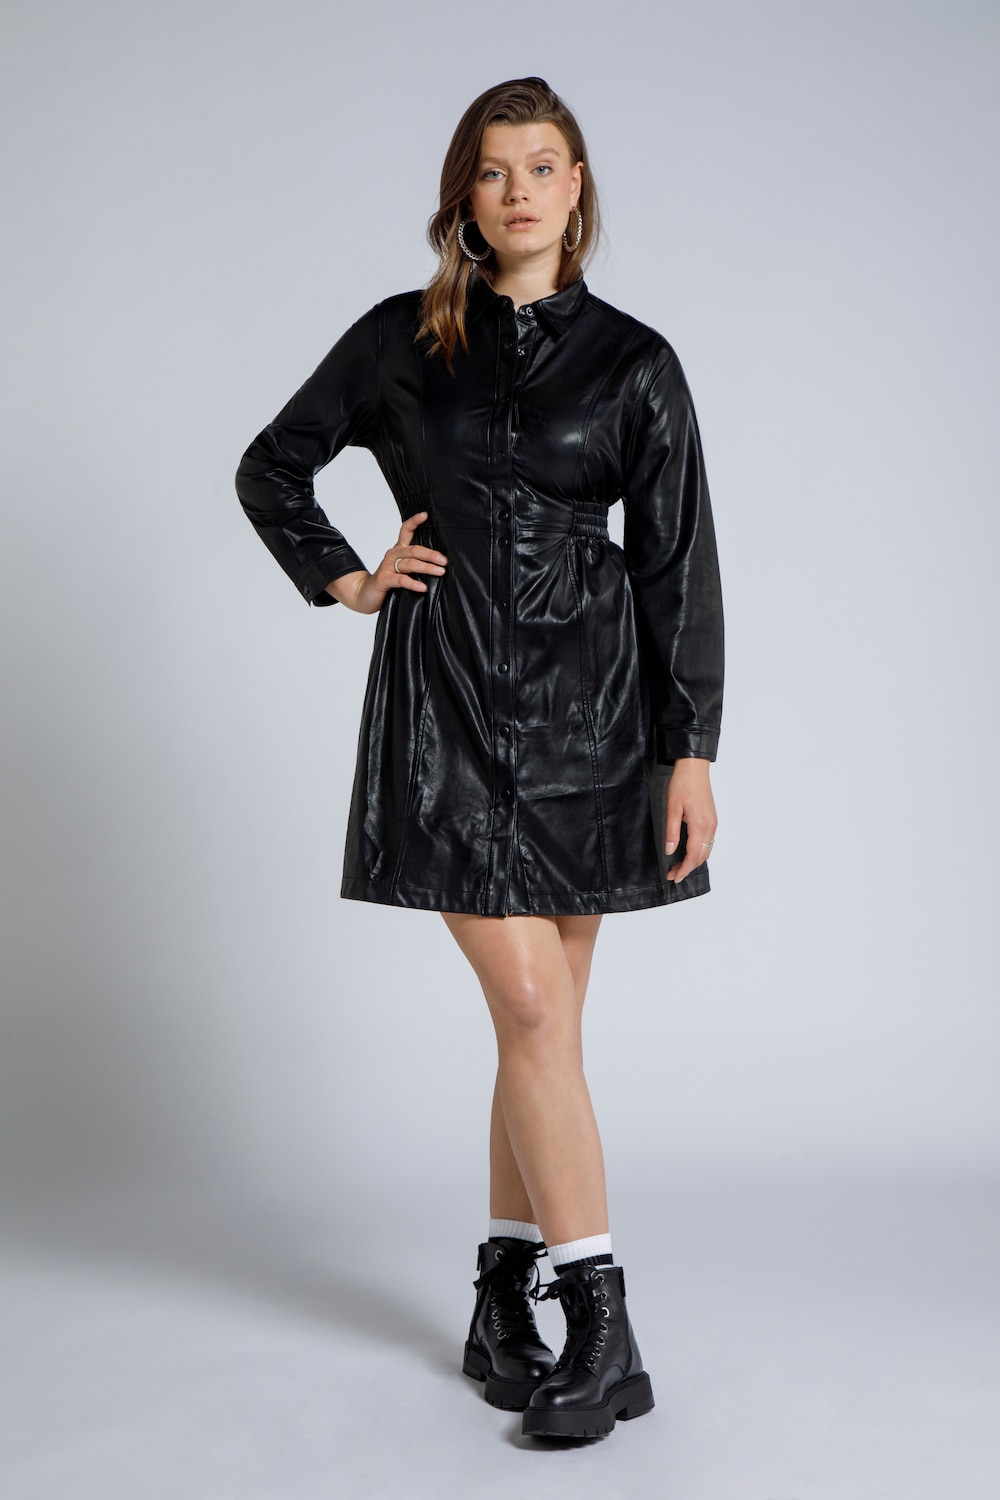 Image of Grosse Grössen Lederoptik Kleid, Damen, schwarz, Größe: 46/48, Synthetische Fasern, Studio Untold